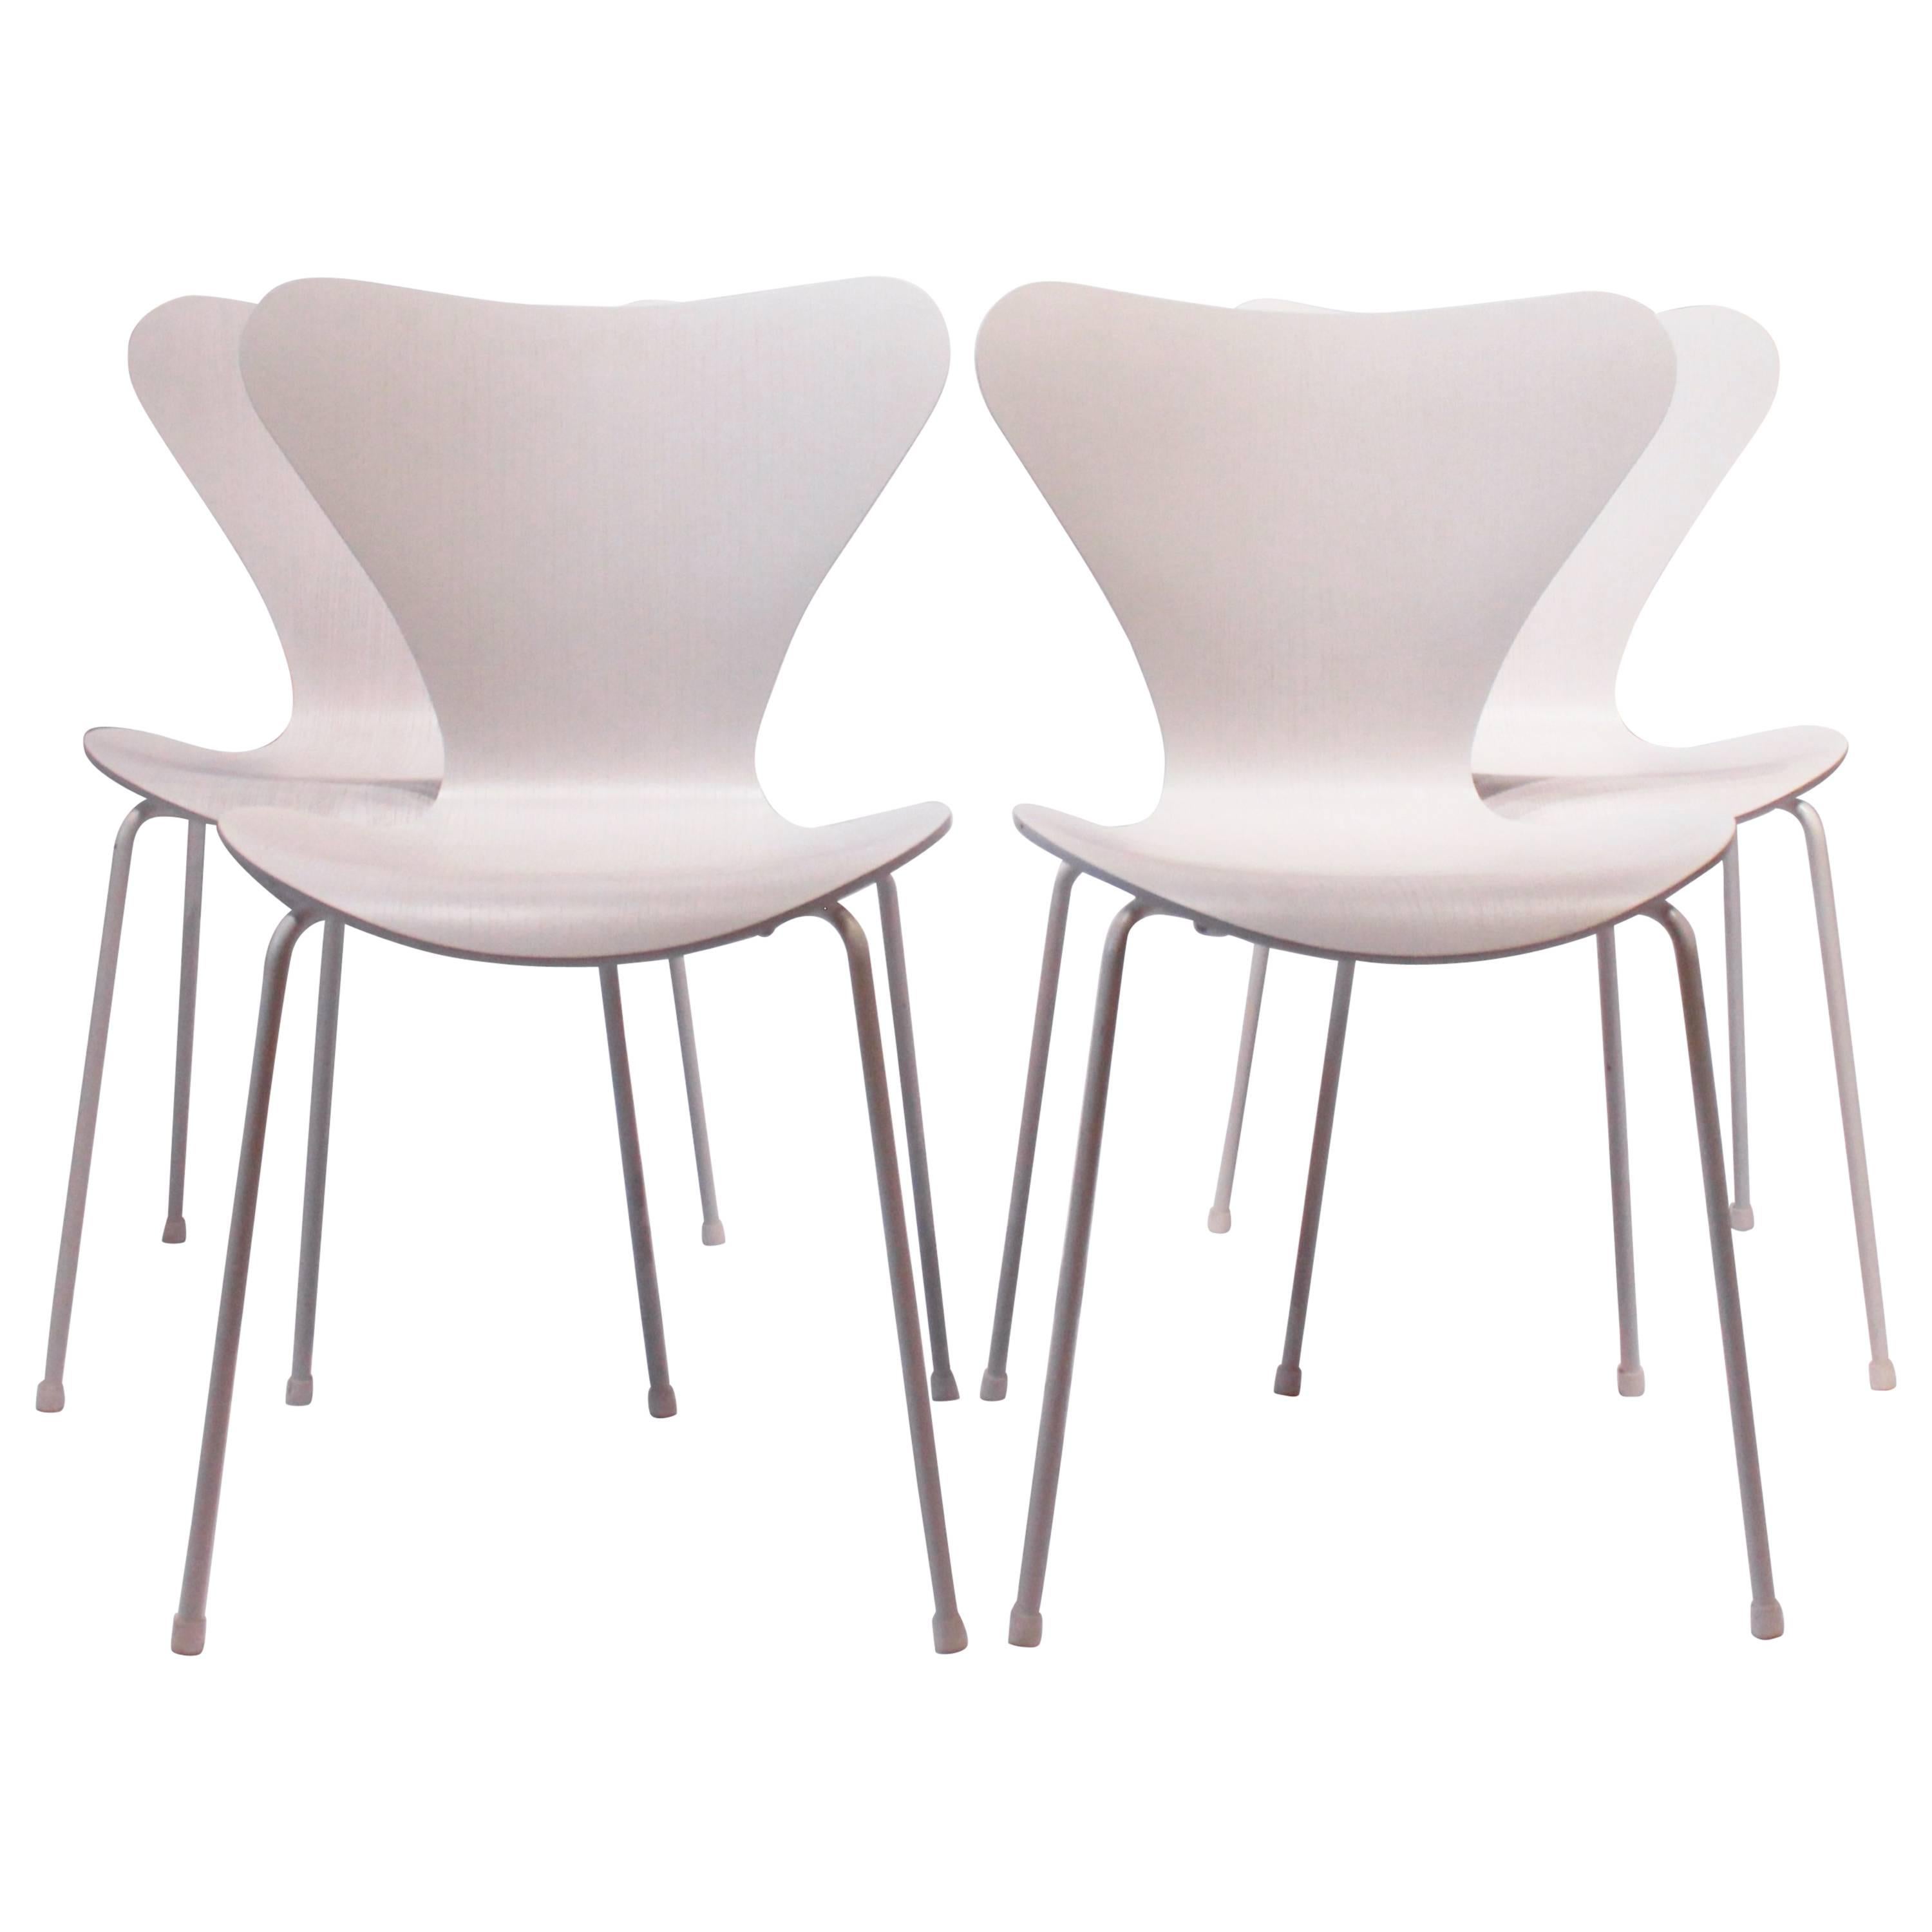 Satz von vier sieben Stühlen, Modell 3107, limitierte Auflage #105 von Arne Jacobsen